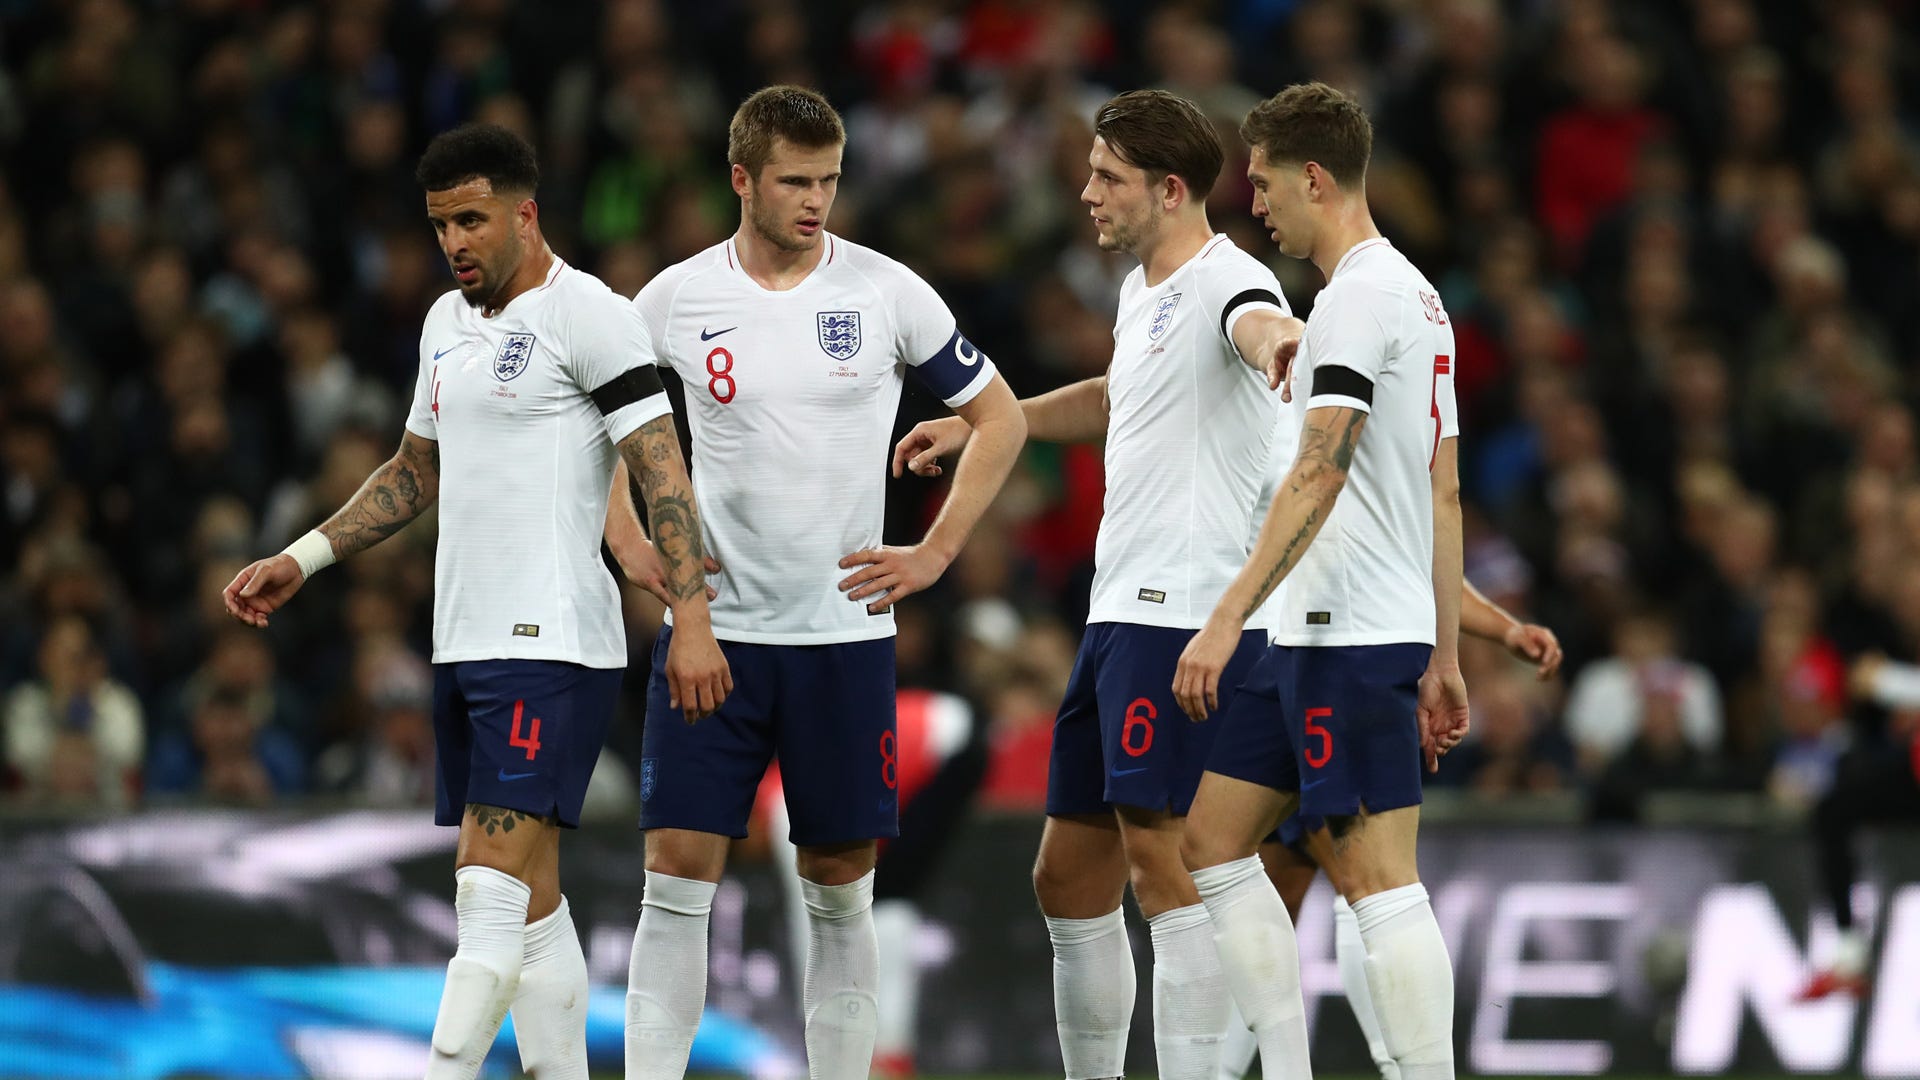 England gegen Costa Rica im LIVE-STREAM So seht Ihr den WM-Härtetest Goal Deutschland